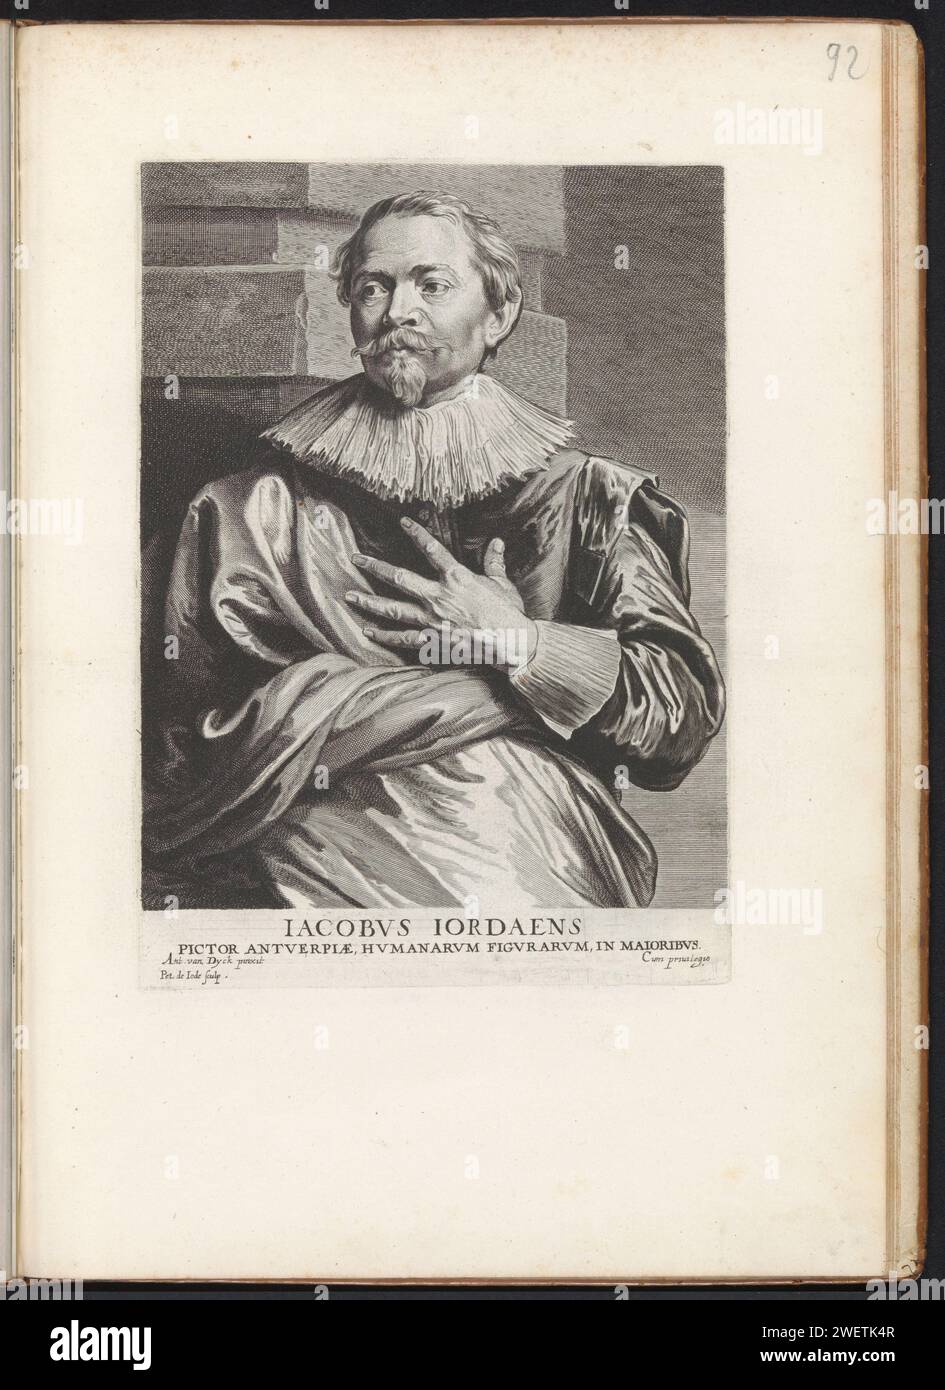 Ritratto dell'artista Jacques Jordaens, 1645 - 1646 stampa Ritratto dell'artista Jacob Jordaens. Tiene la mano sinistra contro il petto. Questa stampa fa parte di un album. ritratto con incisione su carta, autoritratto del pittore Foto Stock